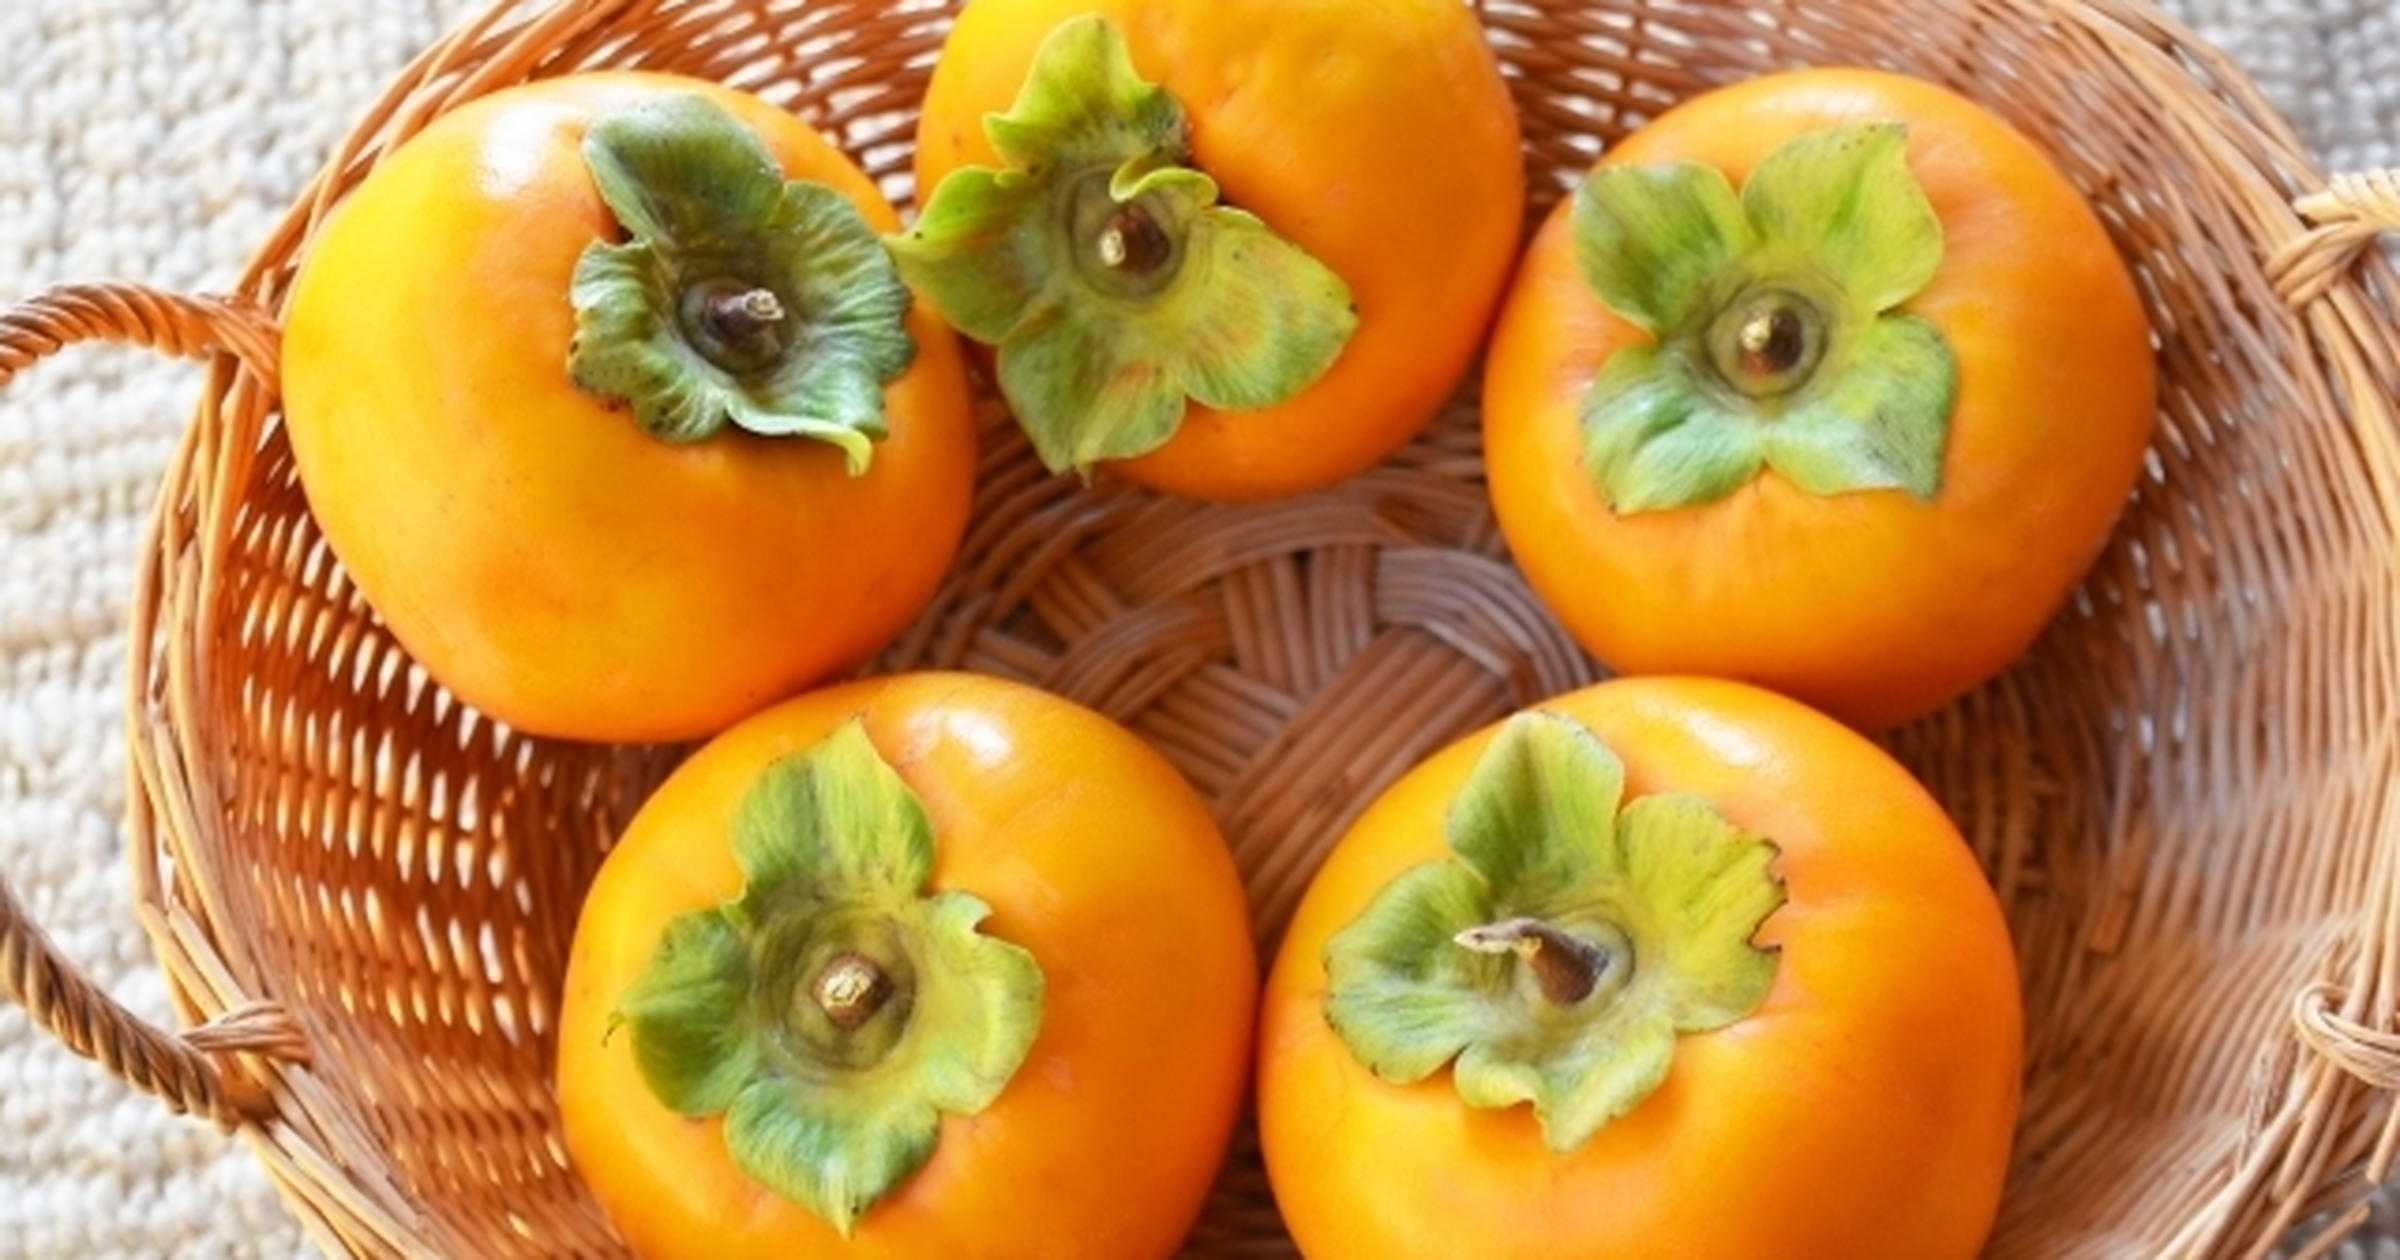 柿の食べすぎは身体によくない 身体への影響と1日の目安量を解説 トクバイニュース